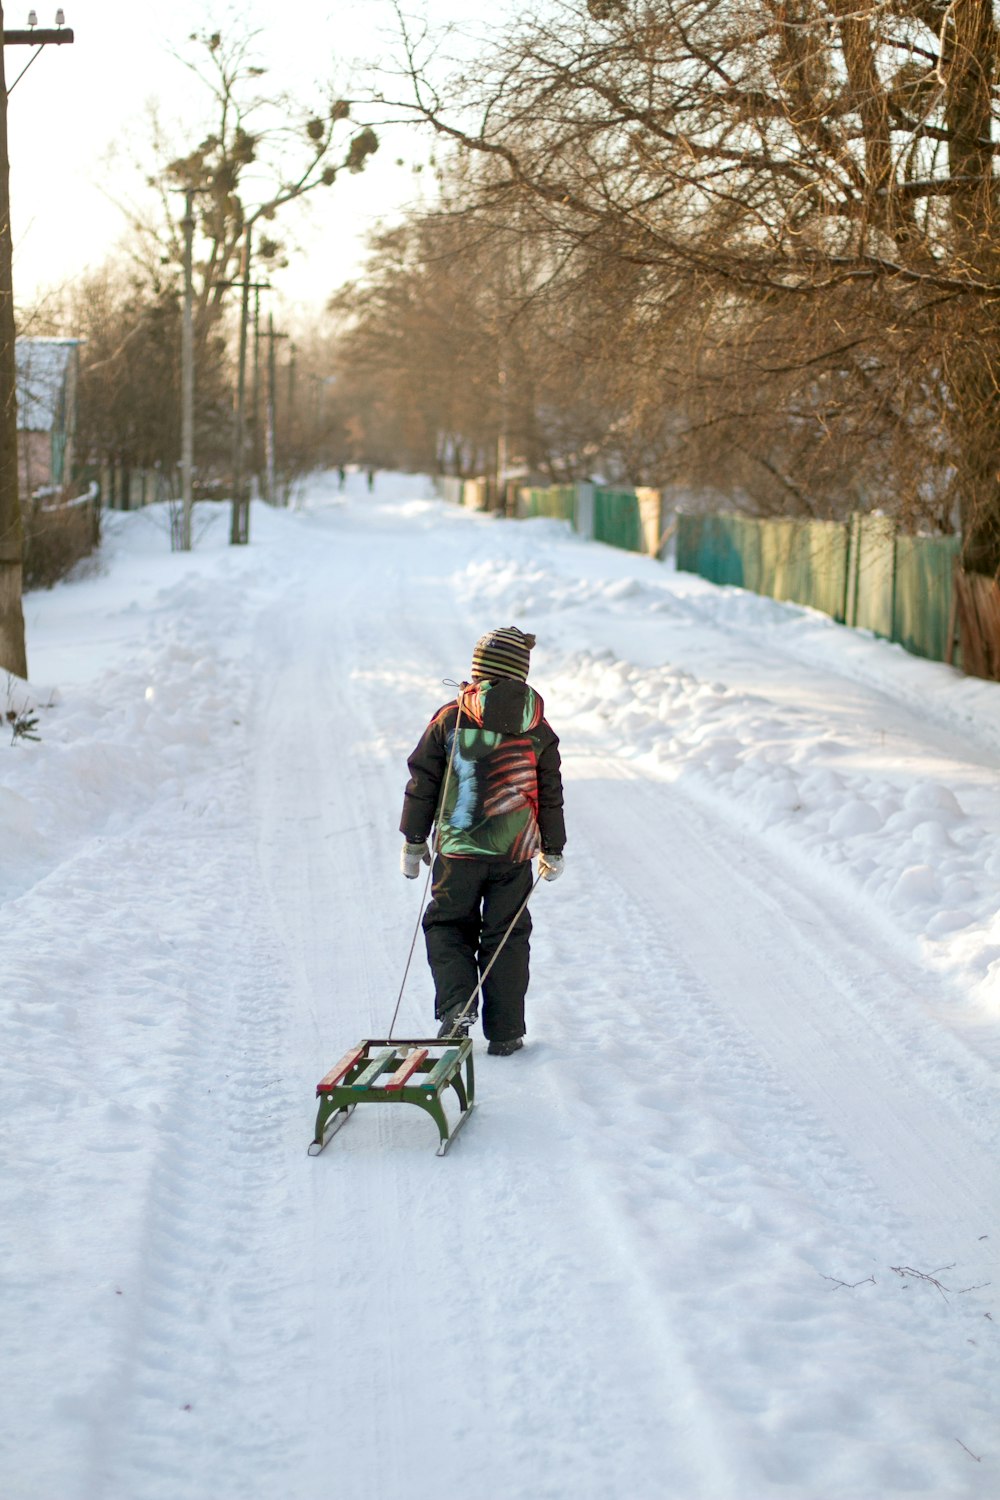 Una persona tirando de un trineo por un camino cubierto de nieve